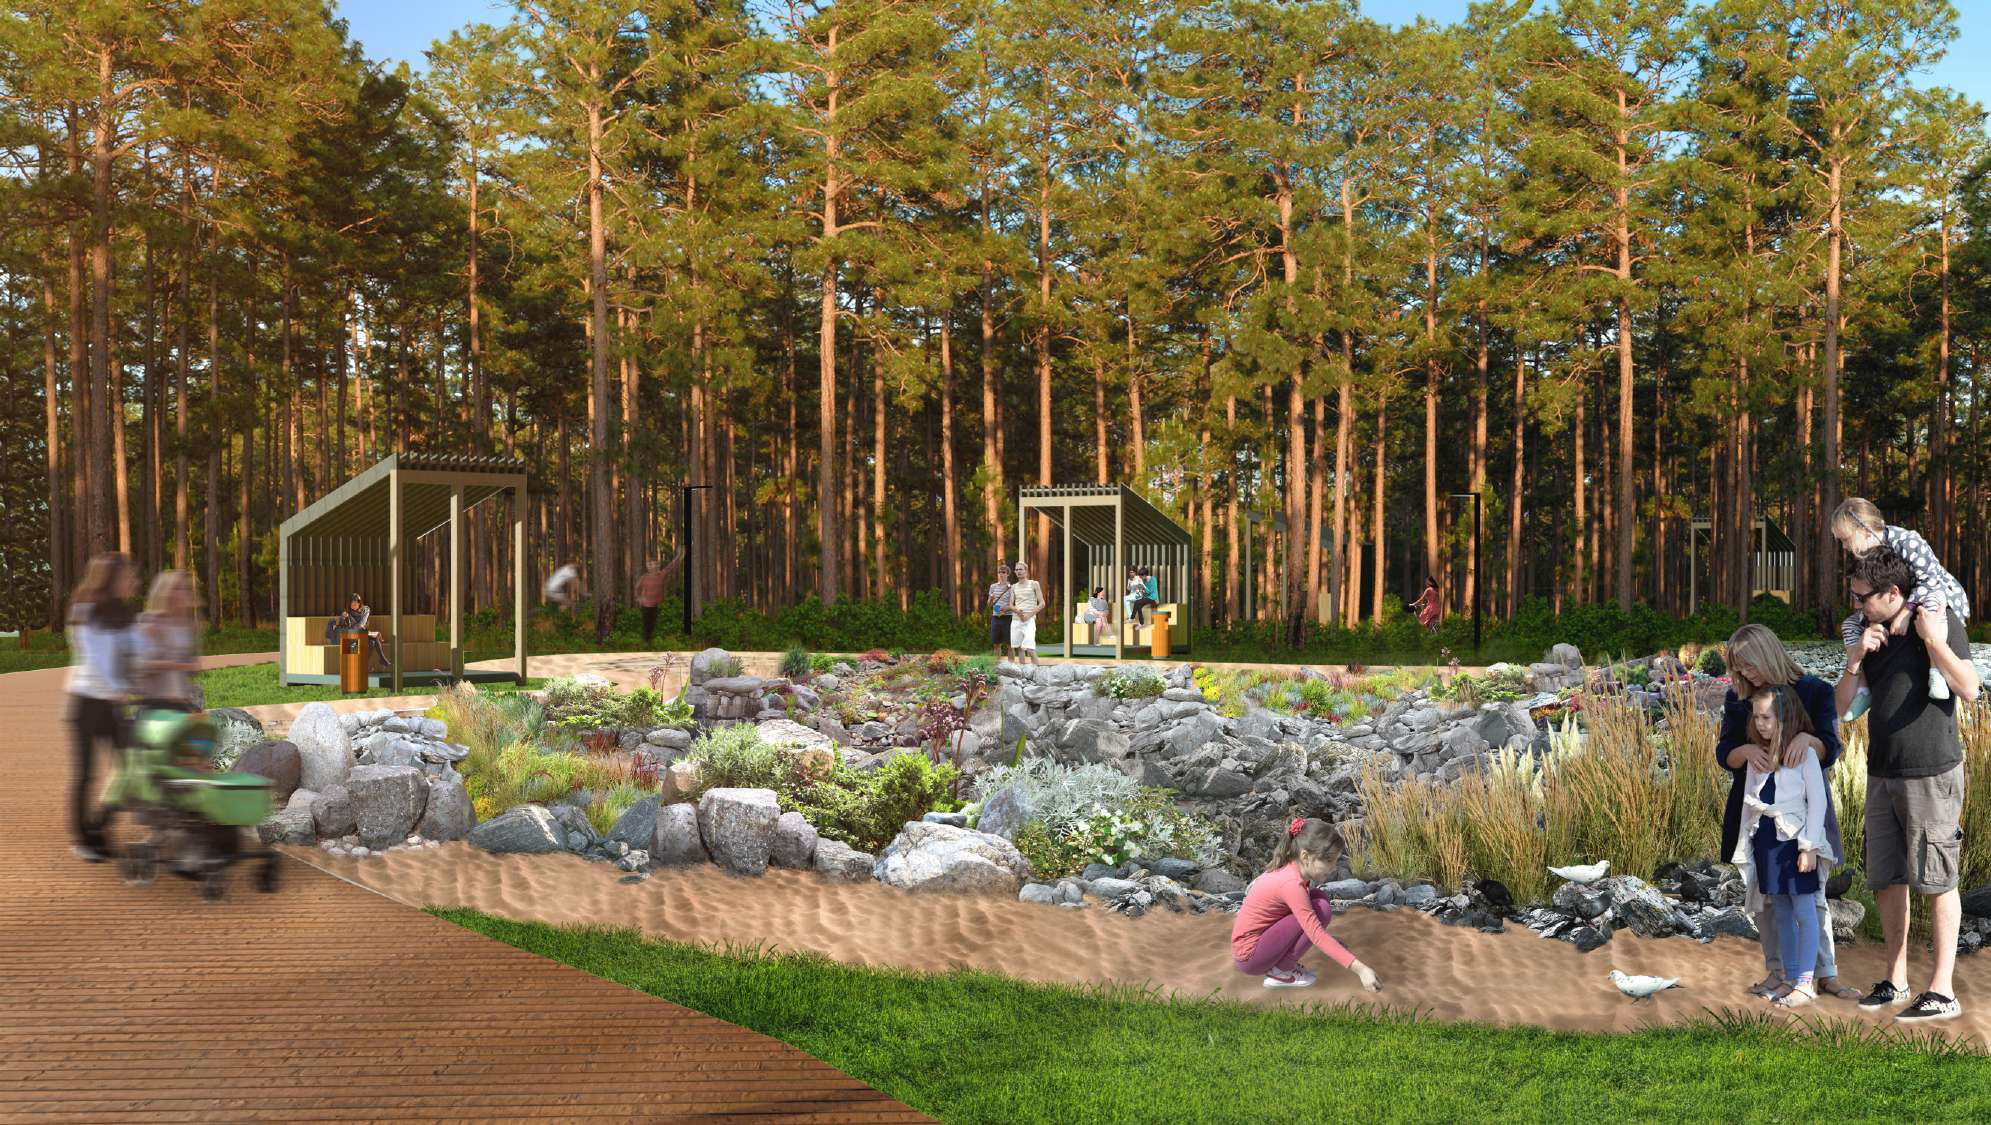 Чтобы разнообразить ландшафт, архитекторы предлагают создать в парке «сухое озеро», то есть углубление, наполненное камнями с добавлением различных декоративных растений. А вокруг него поставят беседки